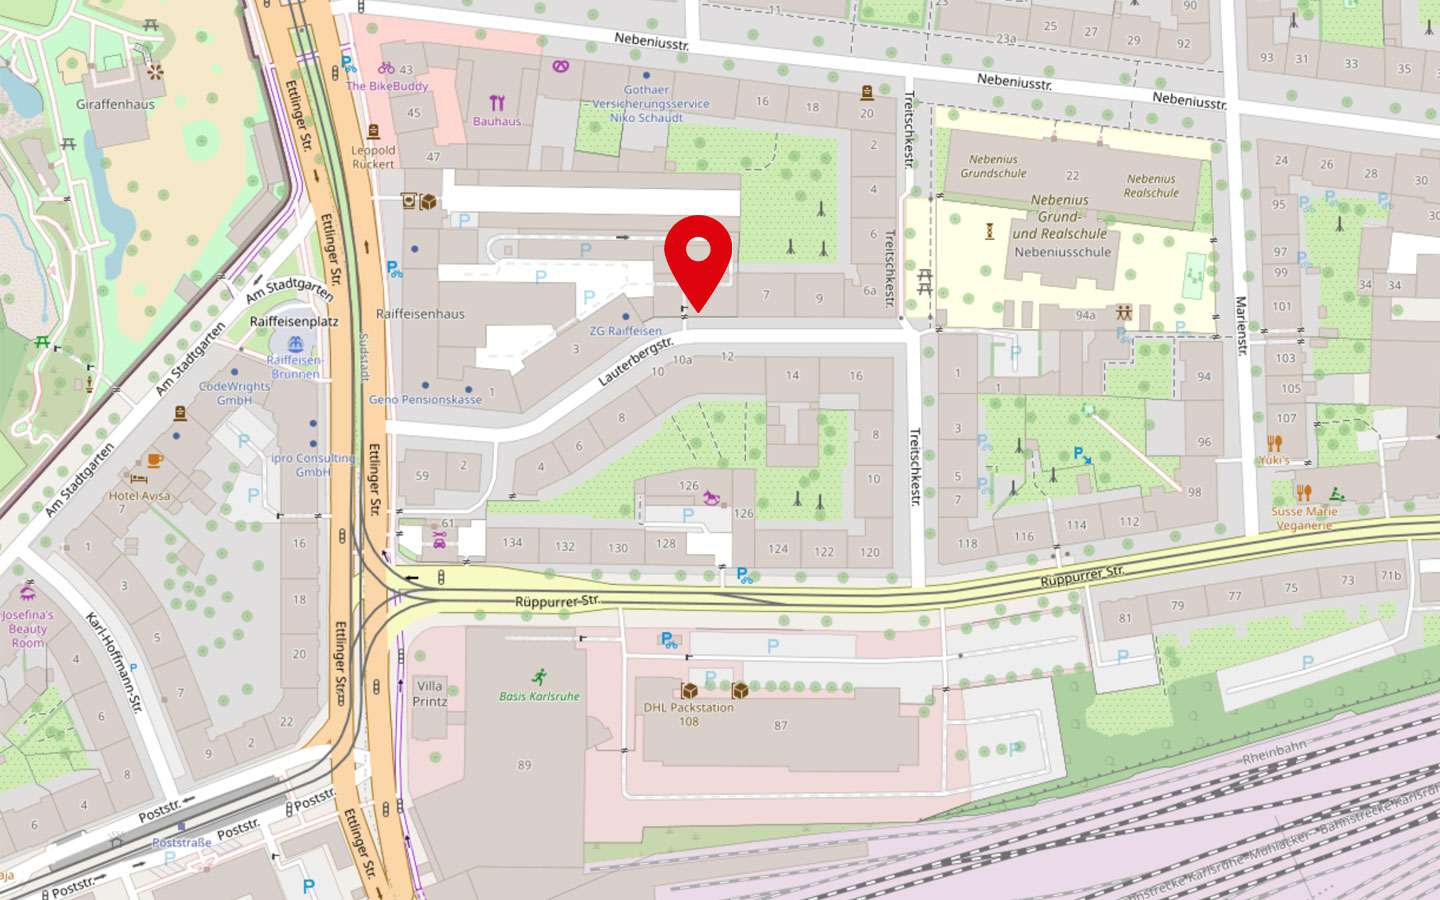 Kartenausschnitt von OpenStreetMap mit markierter Position des Ausbildungszentrums der Malteser.